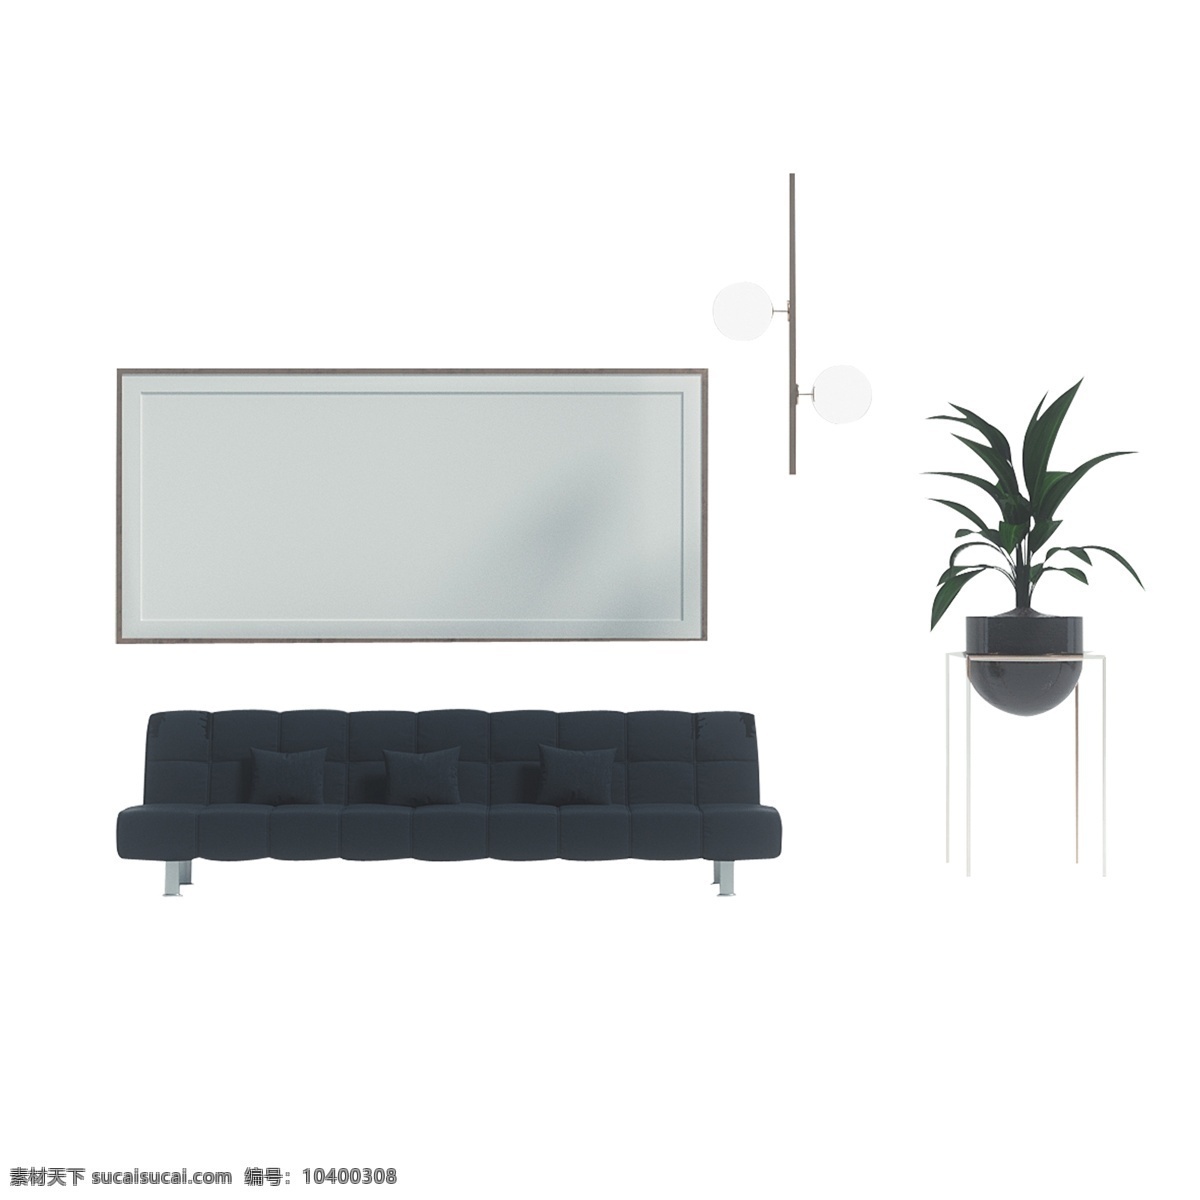 幅 简约 家具 装饰 沙发 房子 放松 公寓 生活 画框 框架 字画框 原木相框 简约的 现代 室内 盆栽 灯饰